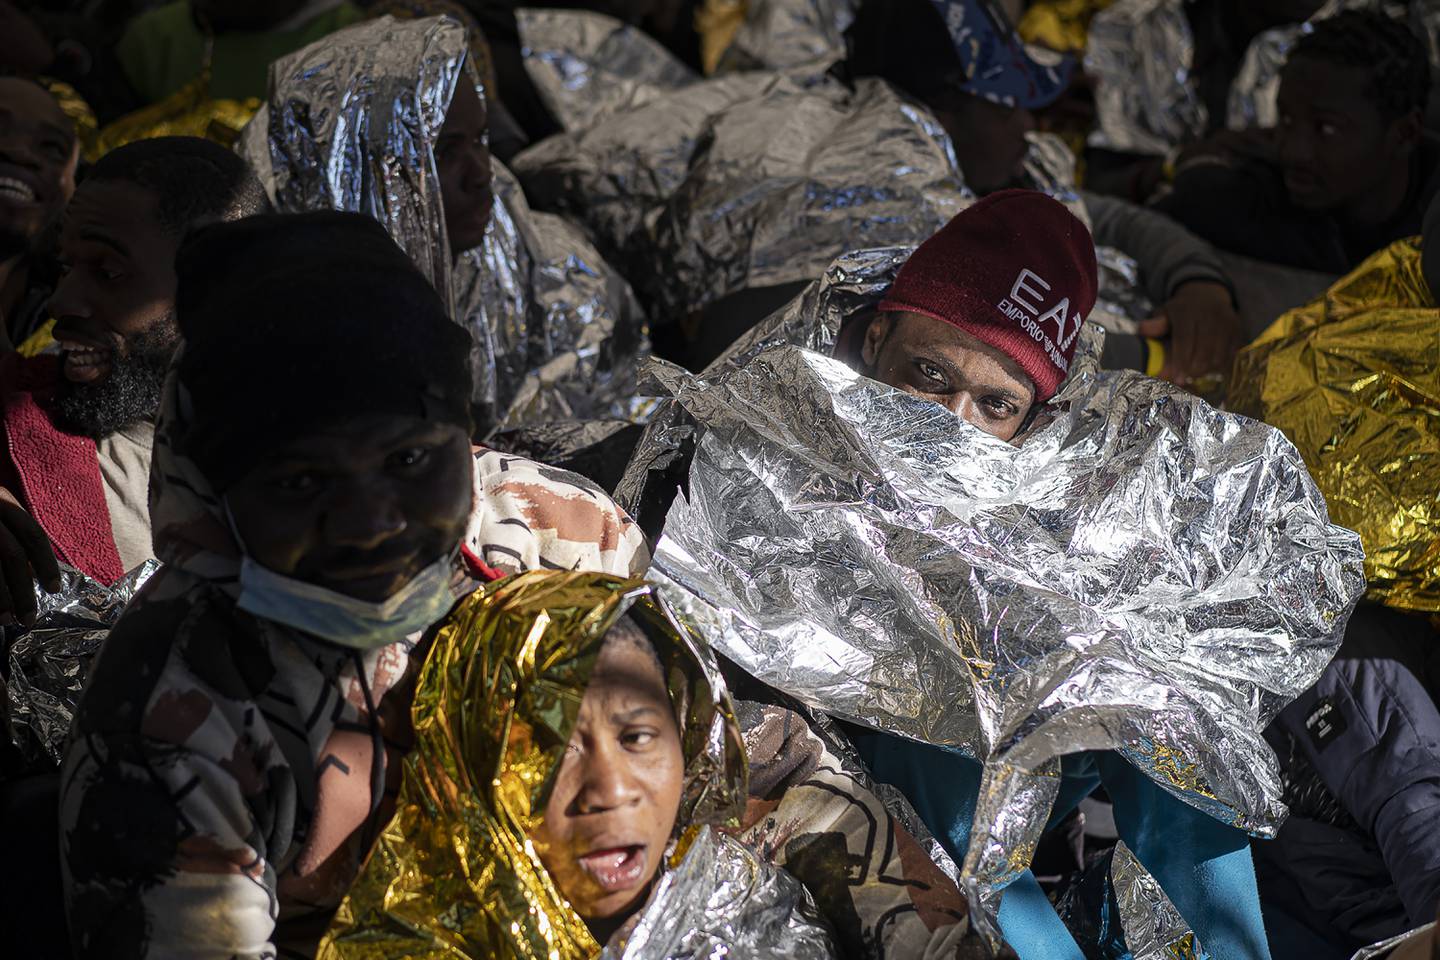 Migranter og flyktninger fikk hjelp om bord i den spanske redningsskøyta Aita Mary etter at de ble reddet opp fra en overfylt trebåt i drift i Middelhavet 28. januar i år. Båten befant seg da ca. 165 kilometer utenfor Libyas kyst. Foto: Pau de la Calle / AP / NTB